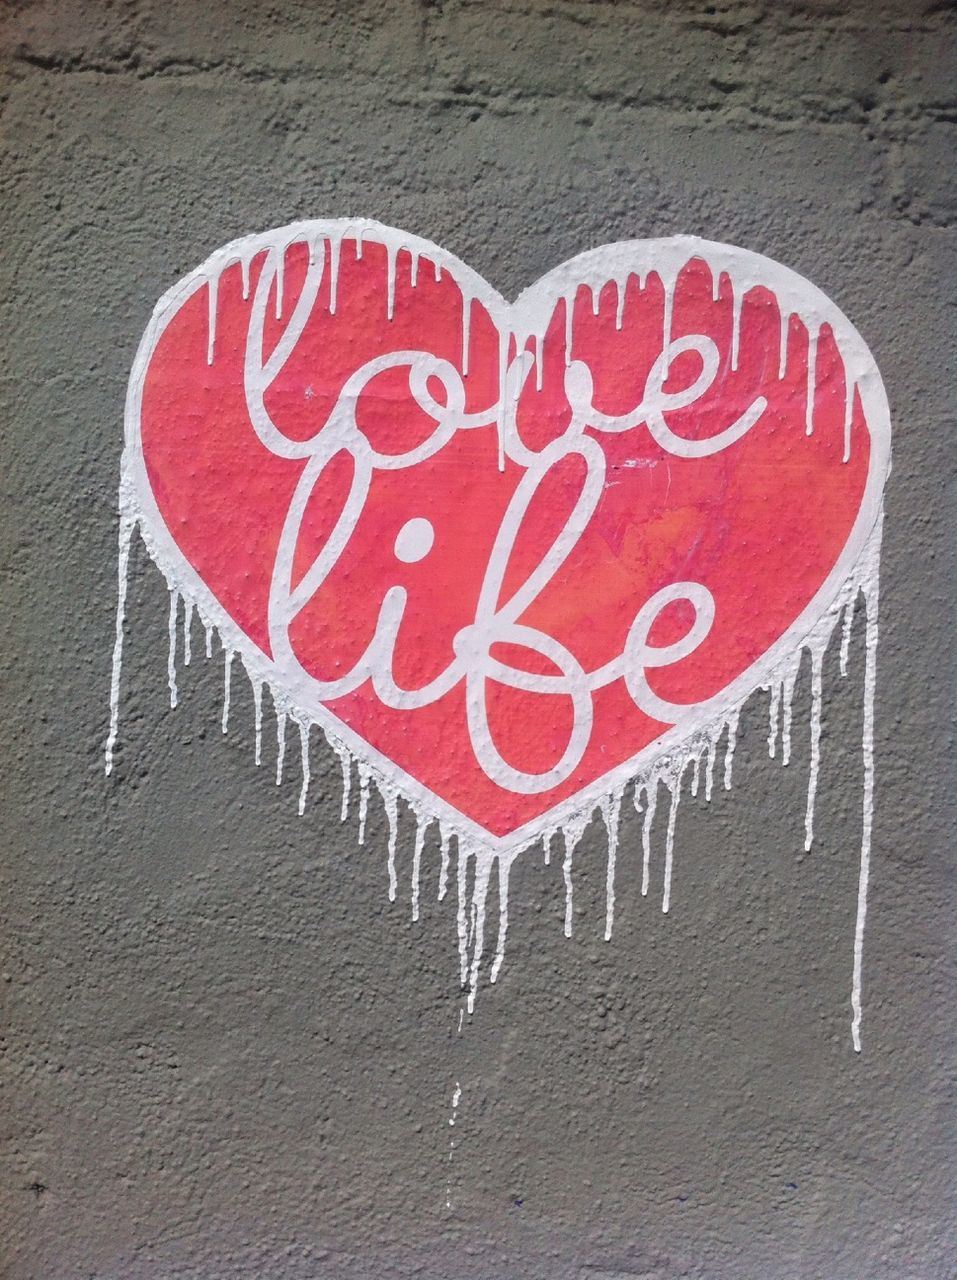 Heart shape graffiti on wall